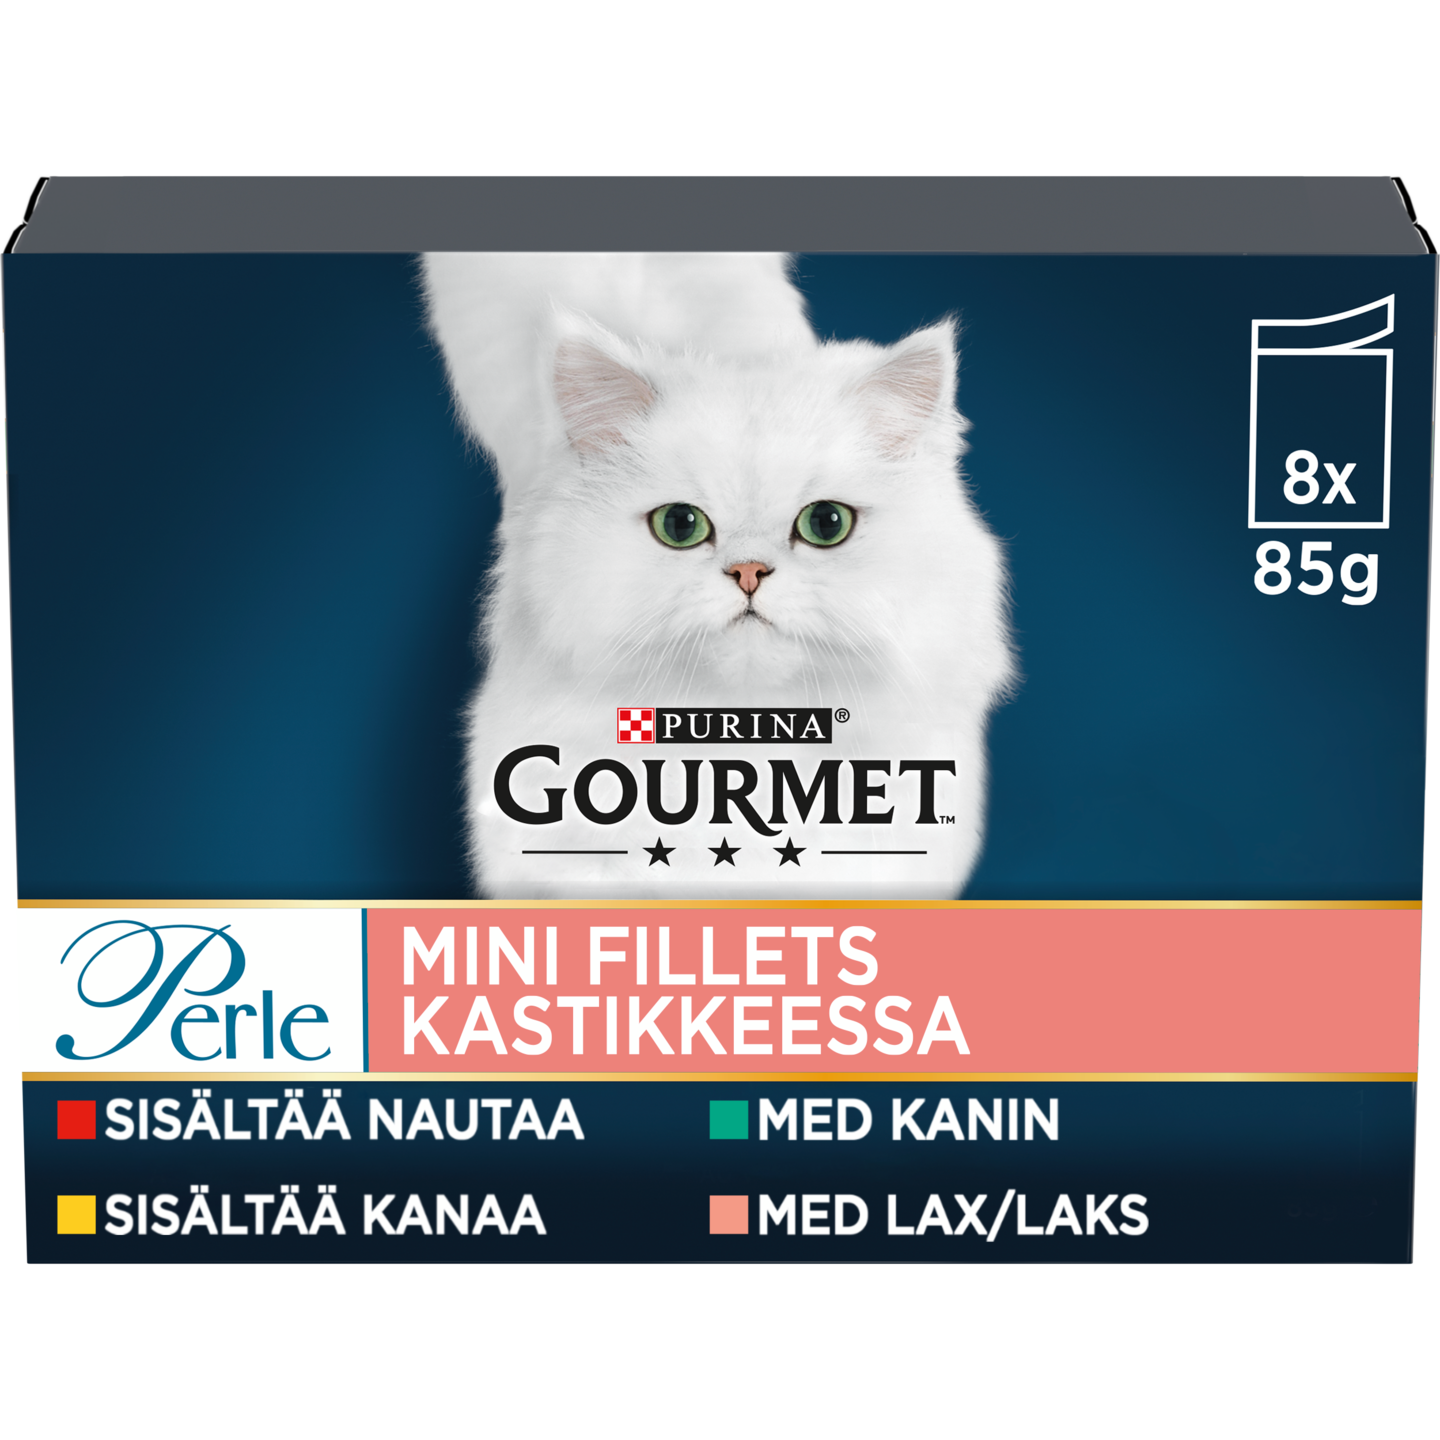 Gourmet Perle Mini Fillets kastikkeessa 8x85g kissanruoka